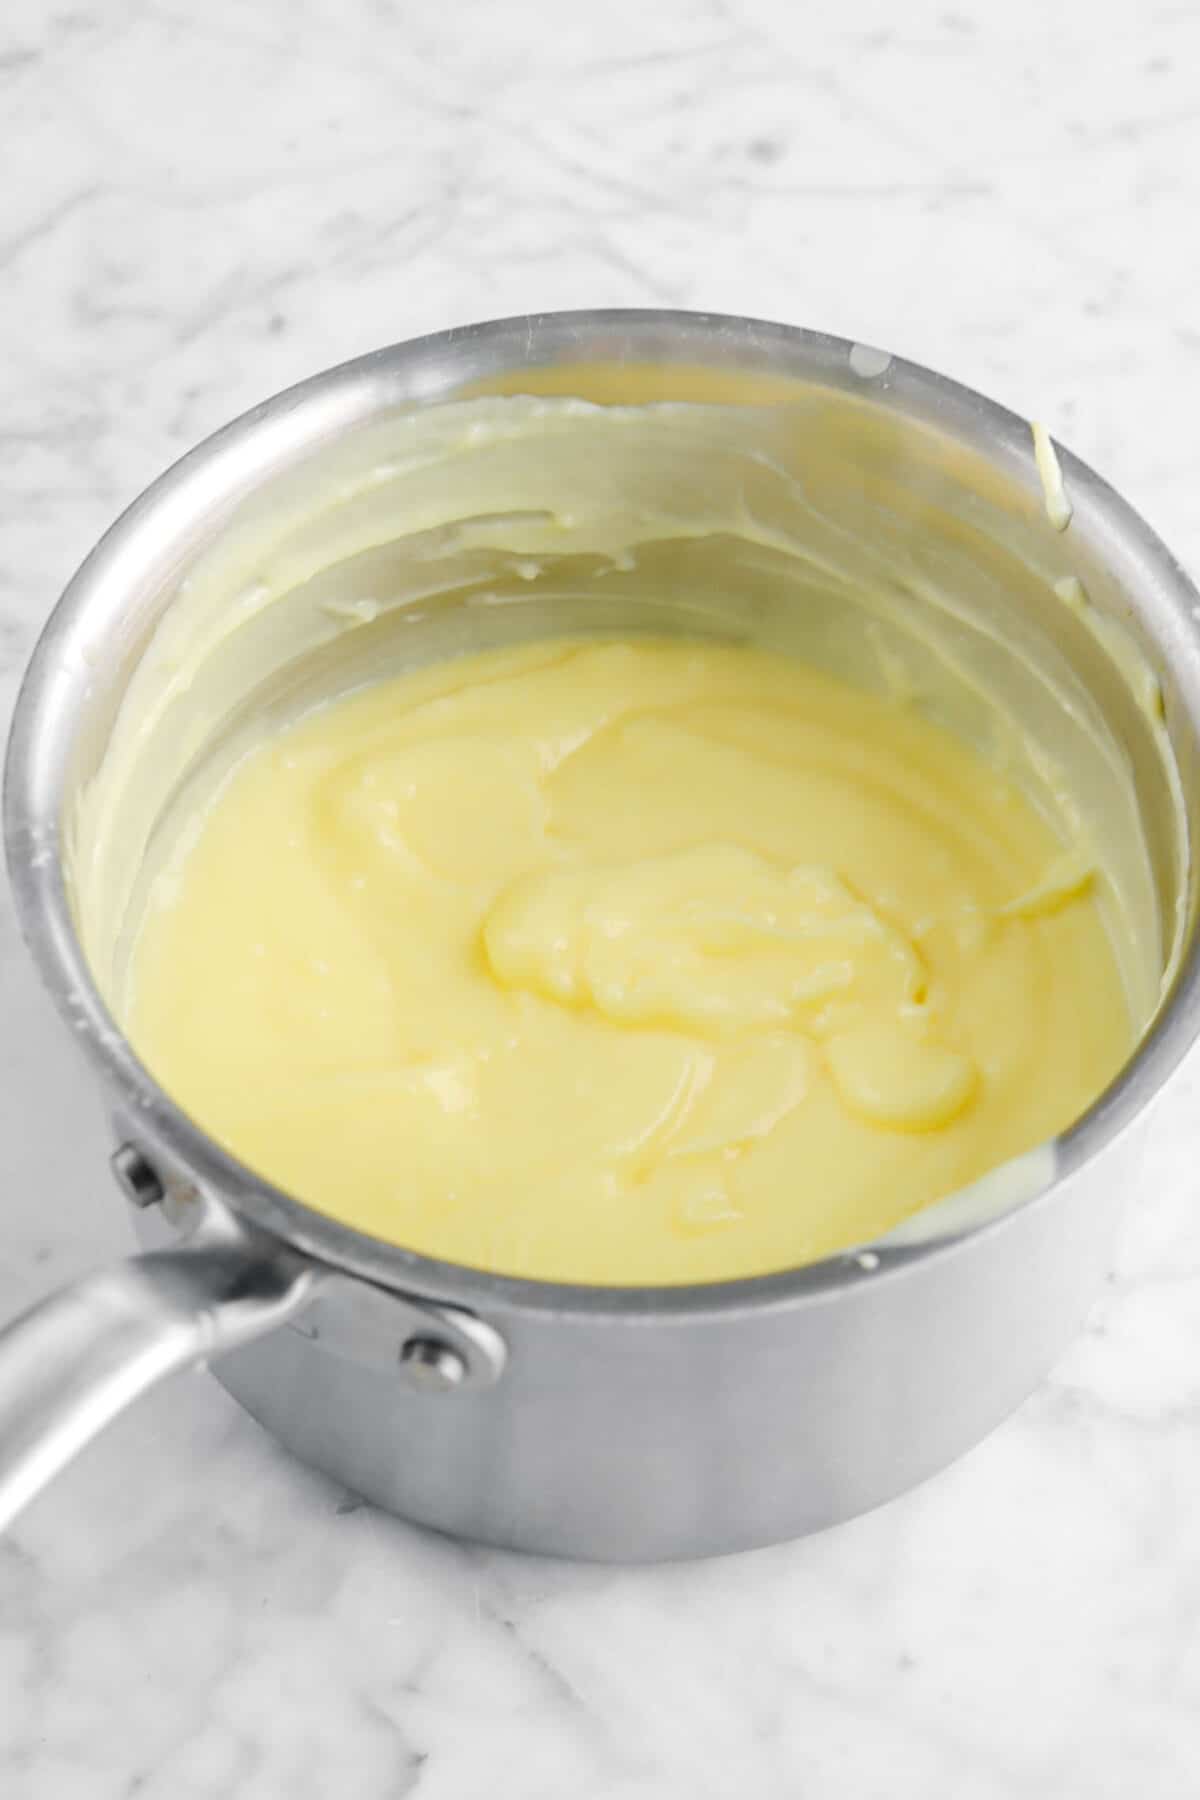 pastry cream in small pot